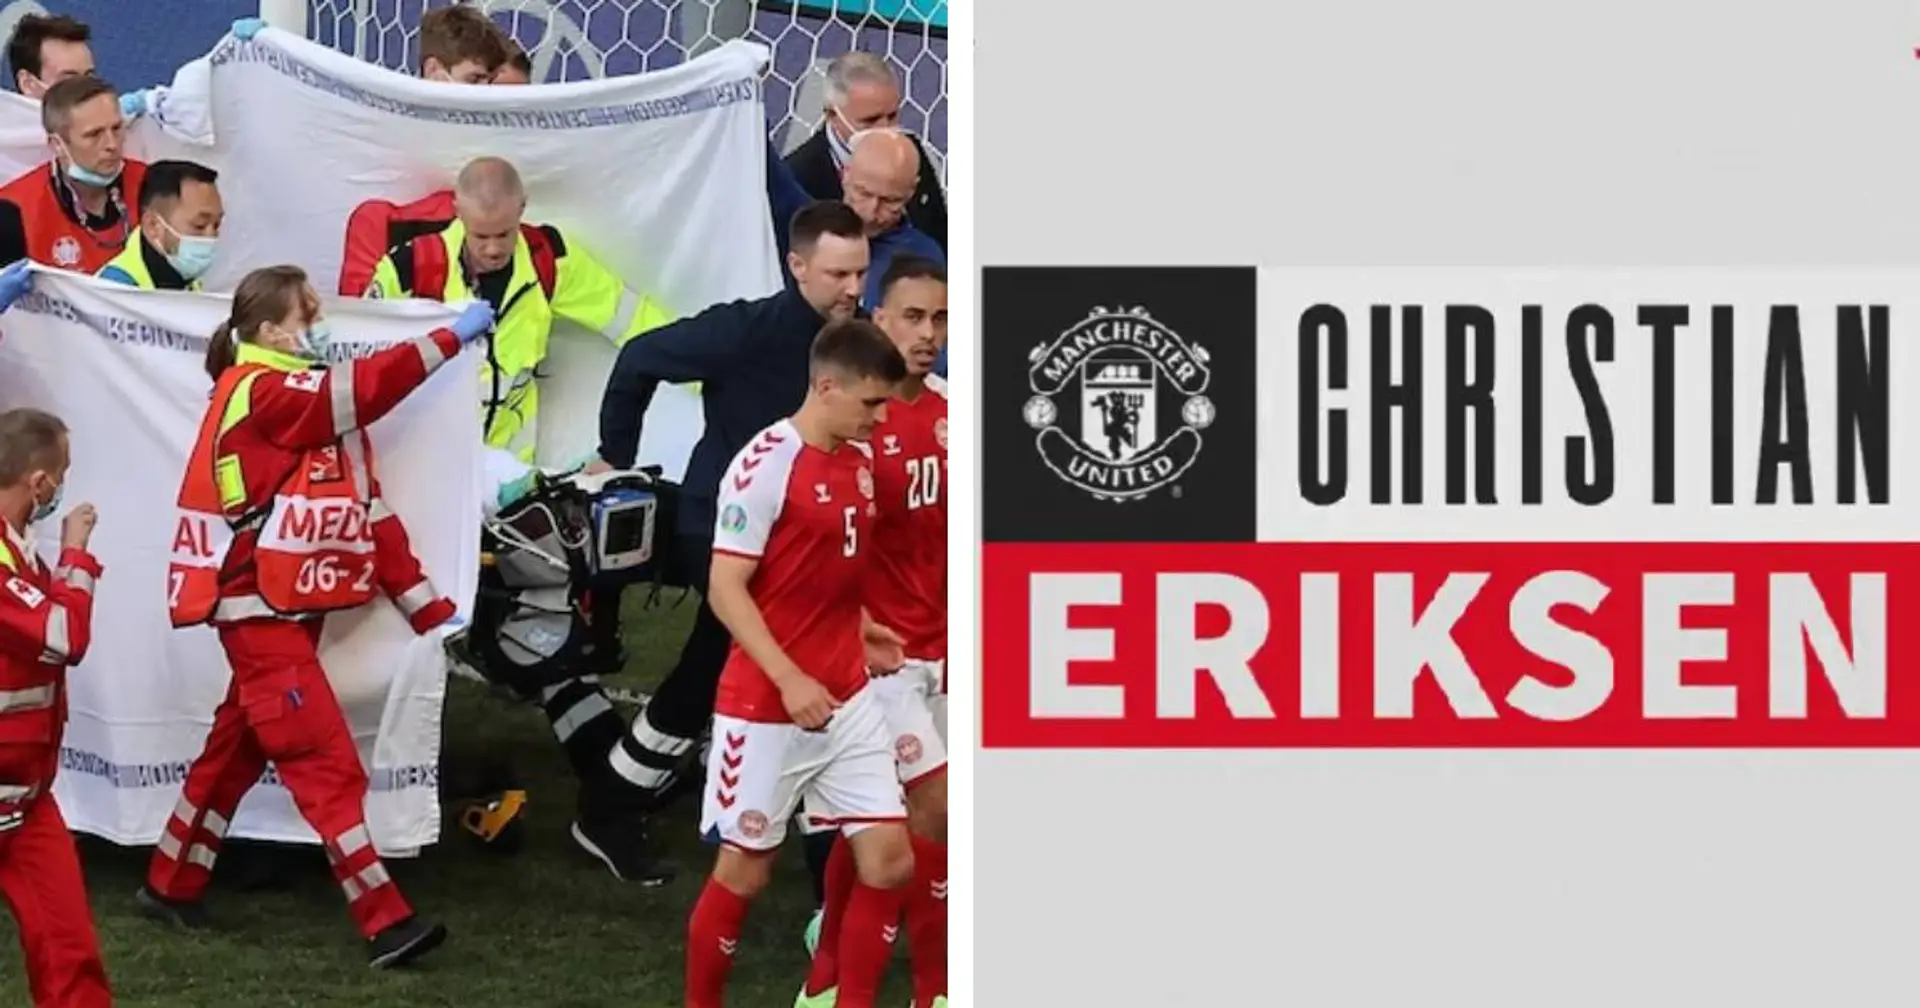 UFFICIALE| Eriksen è un nuovo giocatore del Manchester United, l'ex Inter torna in un top club dopo il malore